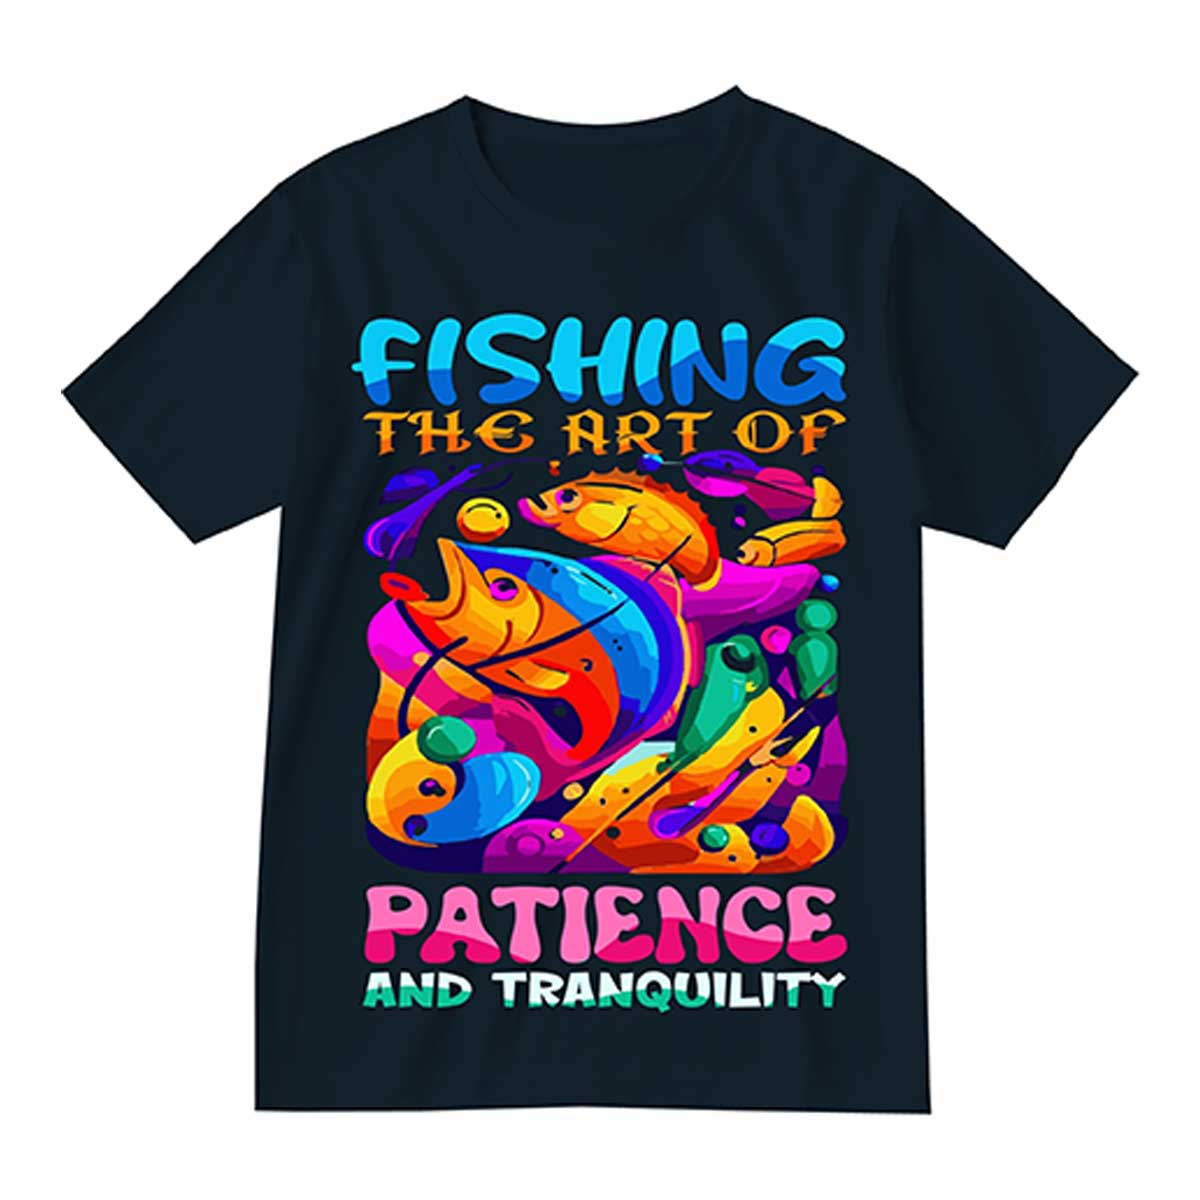 Fishing Shirts Manufacturers in Krasnodar